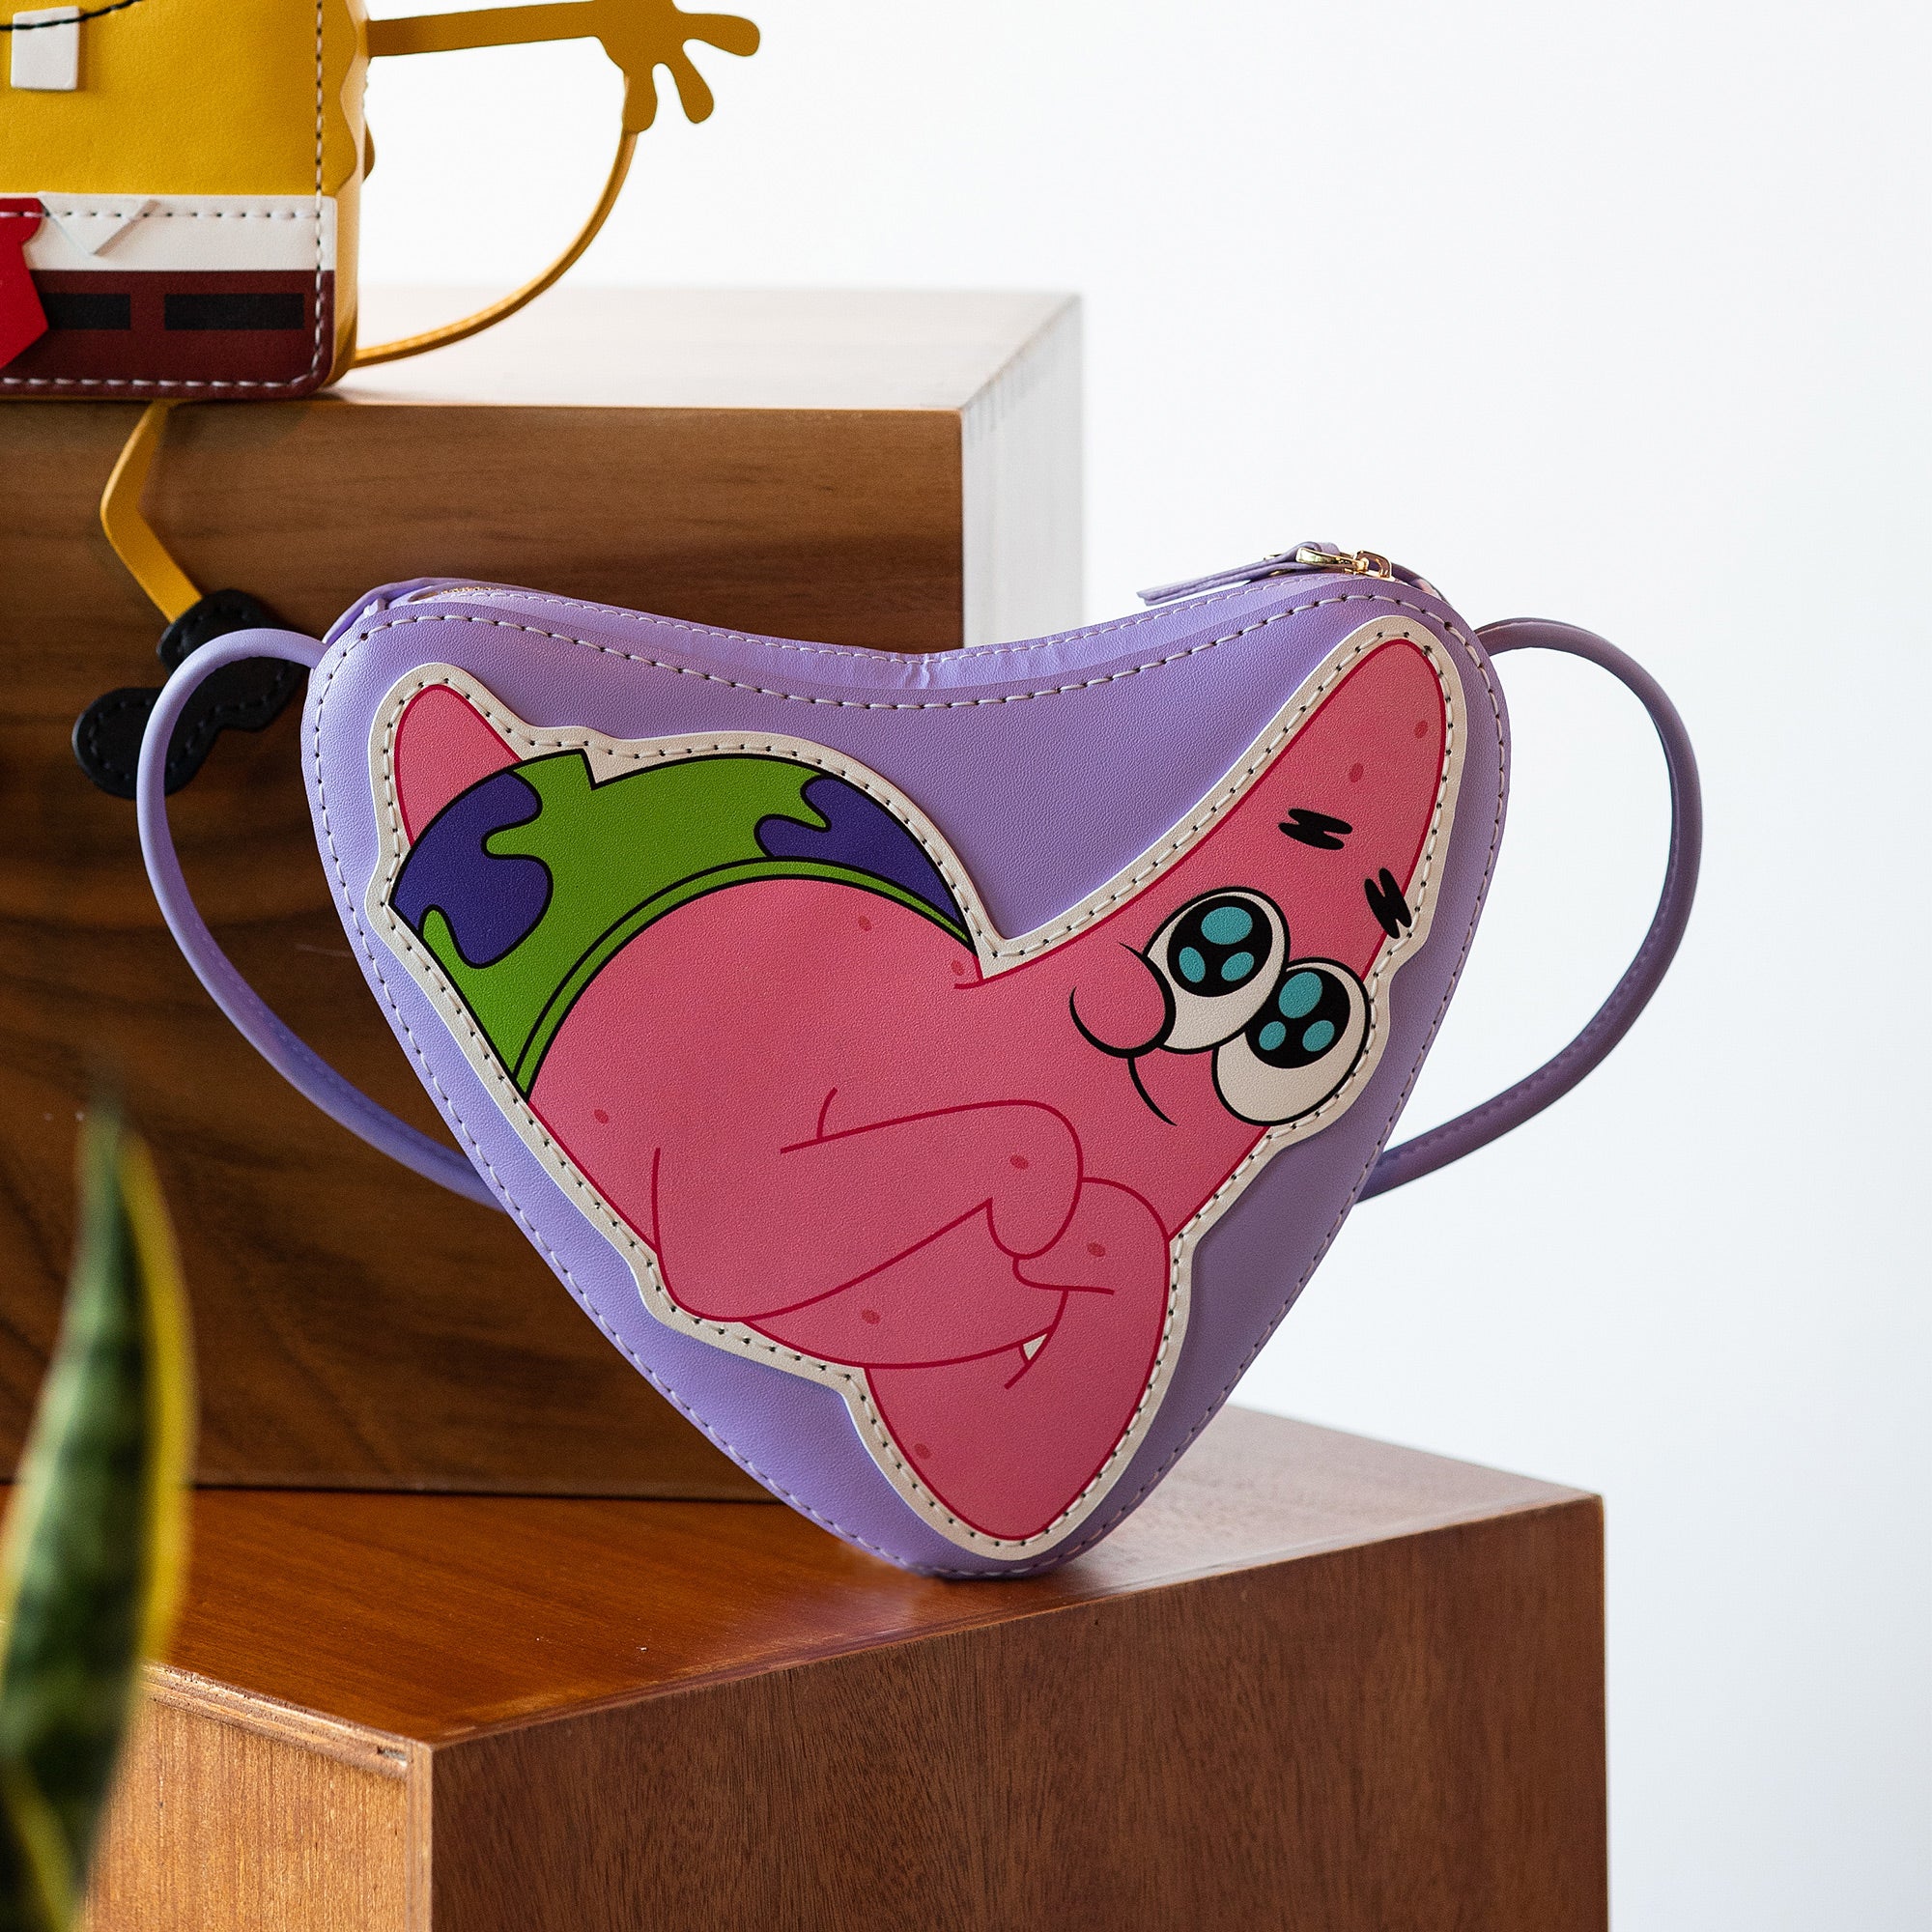 DIY Bag Kits - Patrick Star Love Style Bag